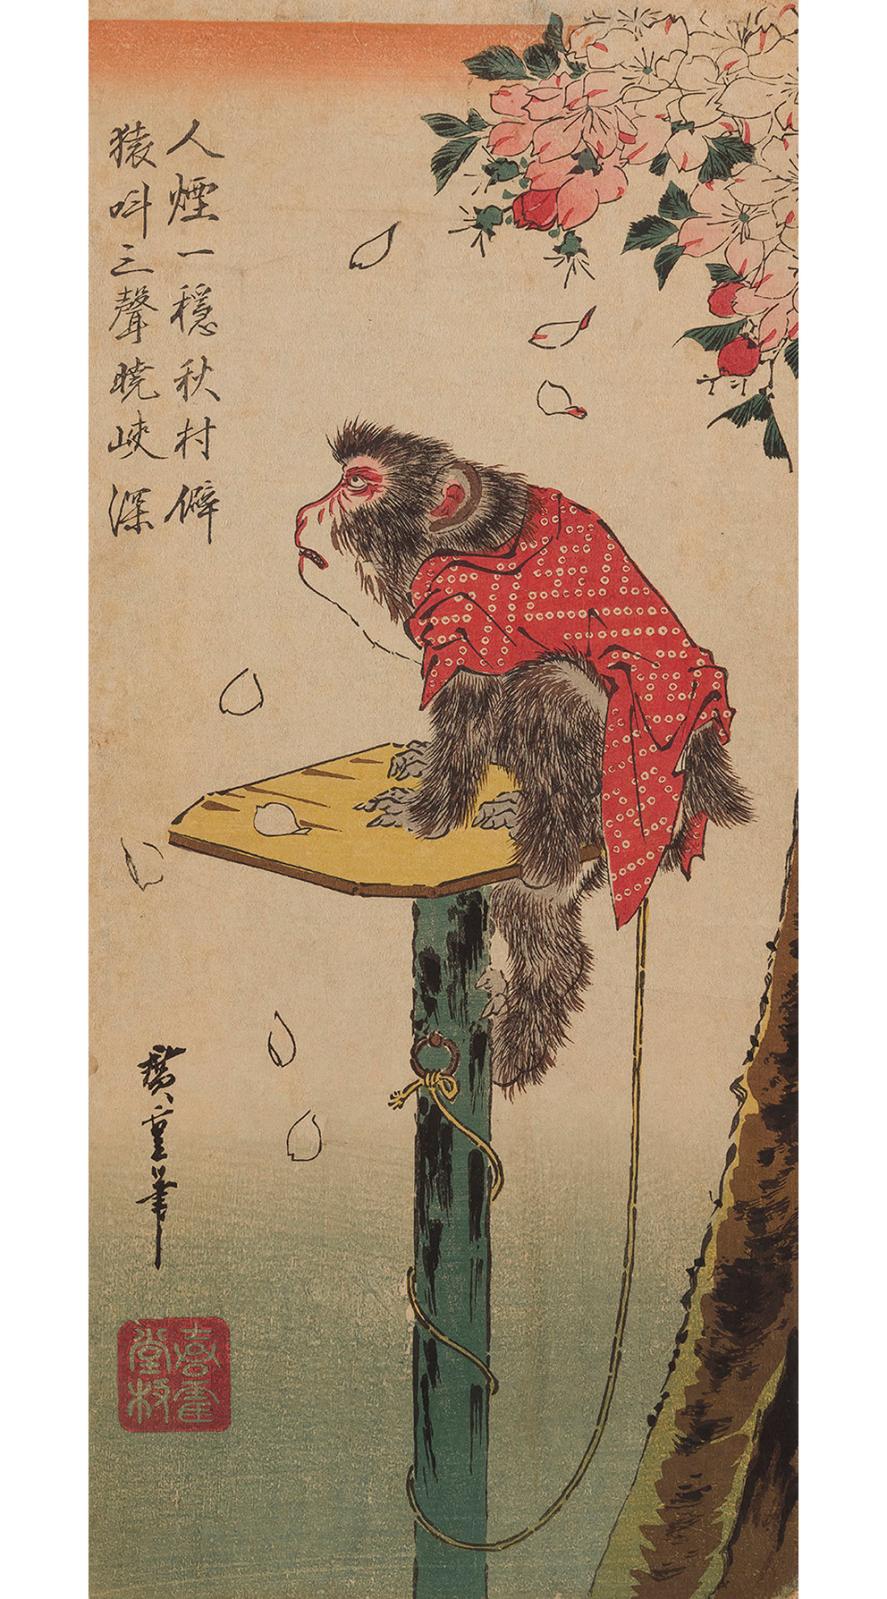 Le singe en automne d’hiroshige